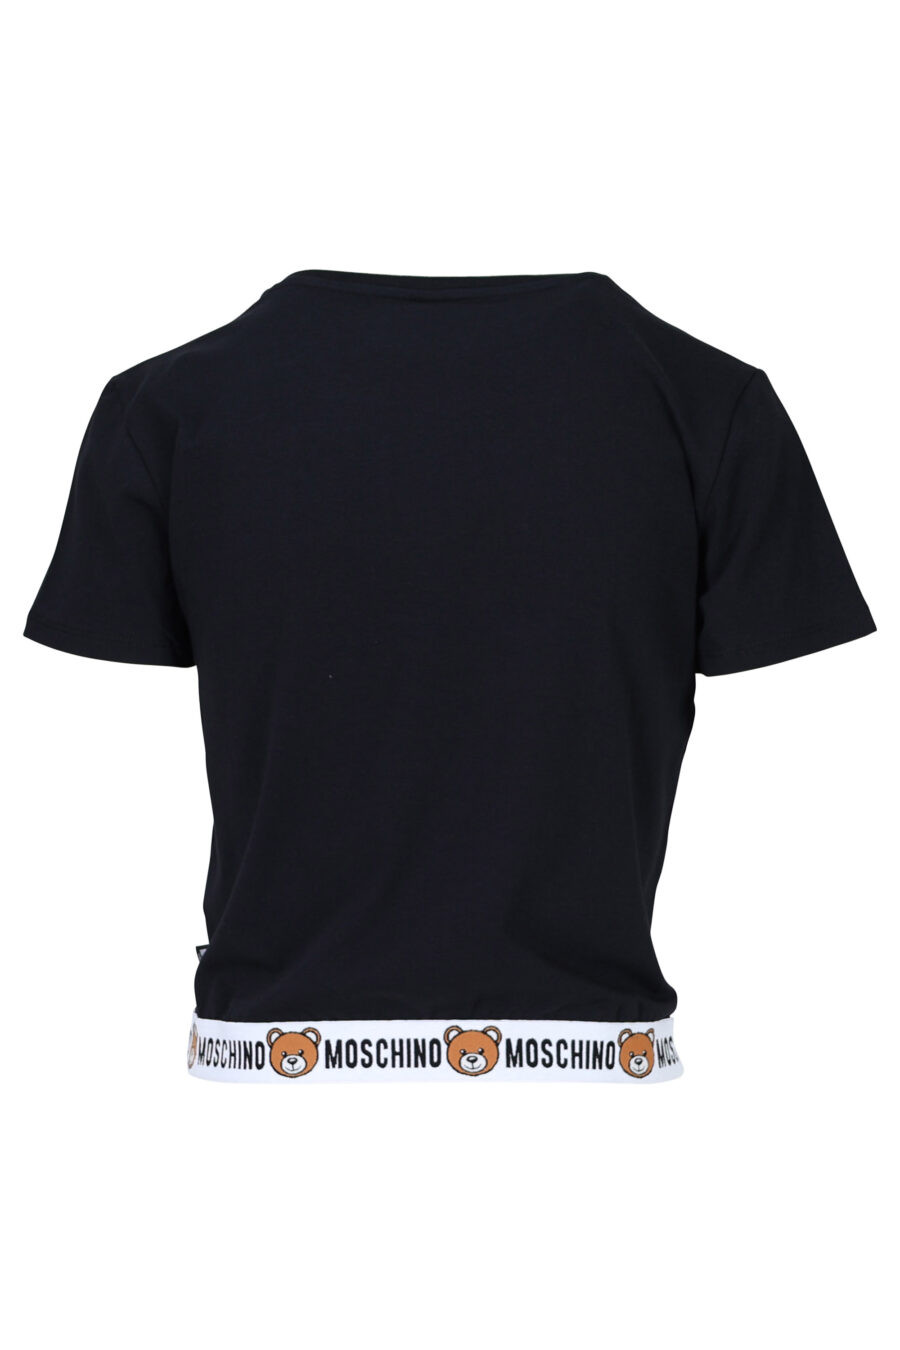 Camiseta negra con logo oso "underbear" en cinta - 667113034157 1